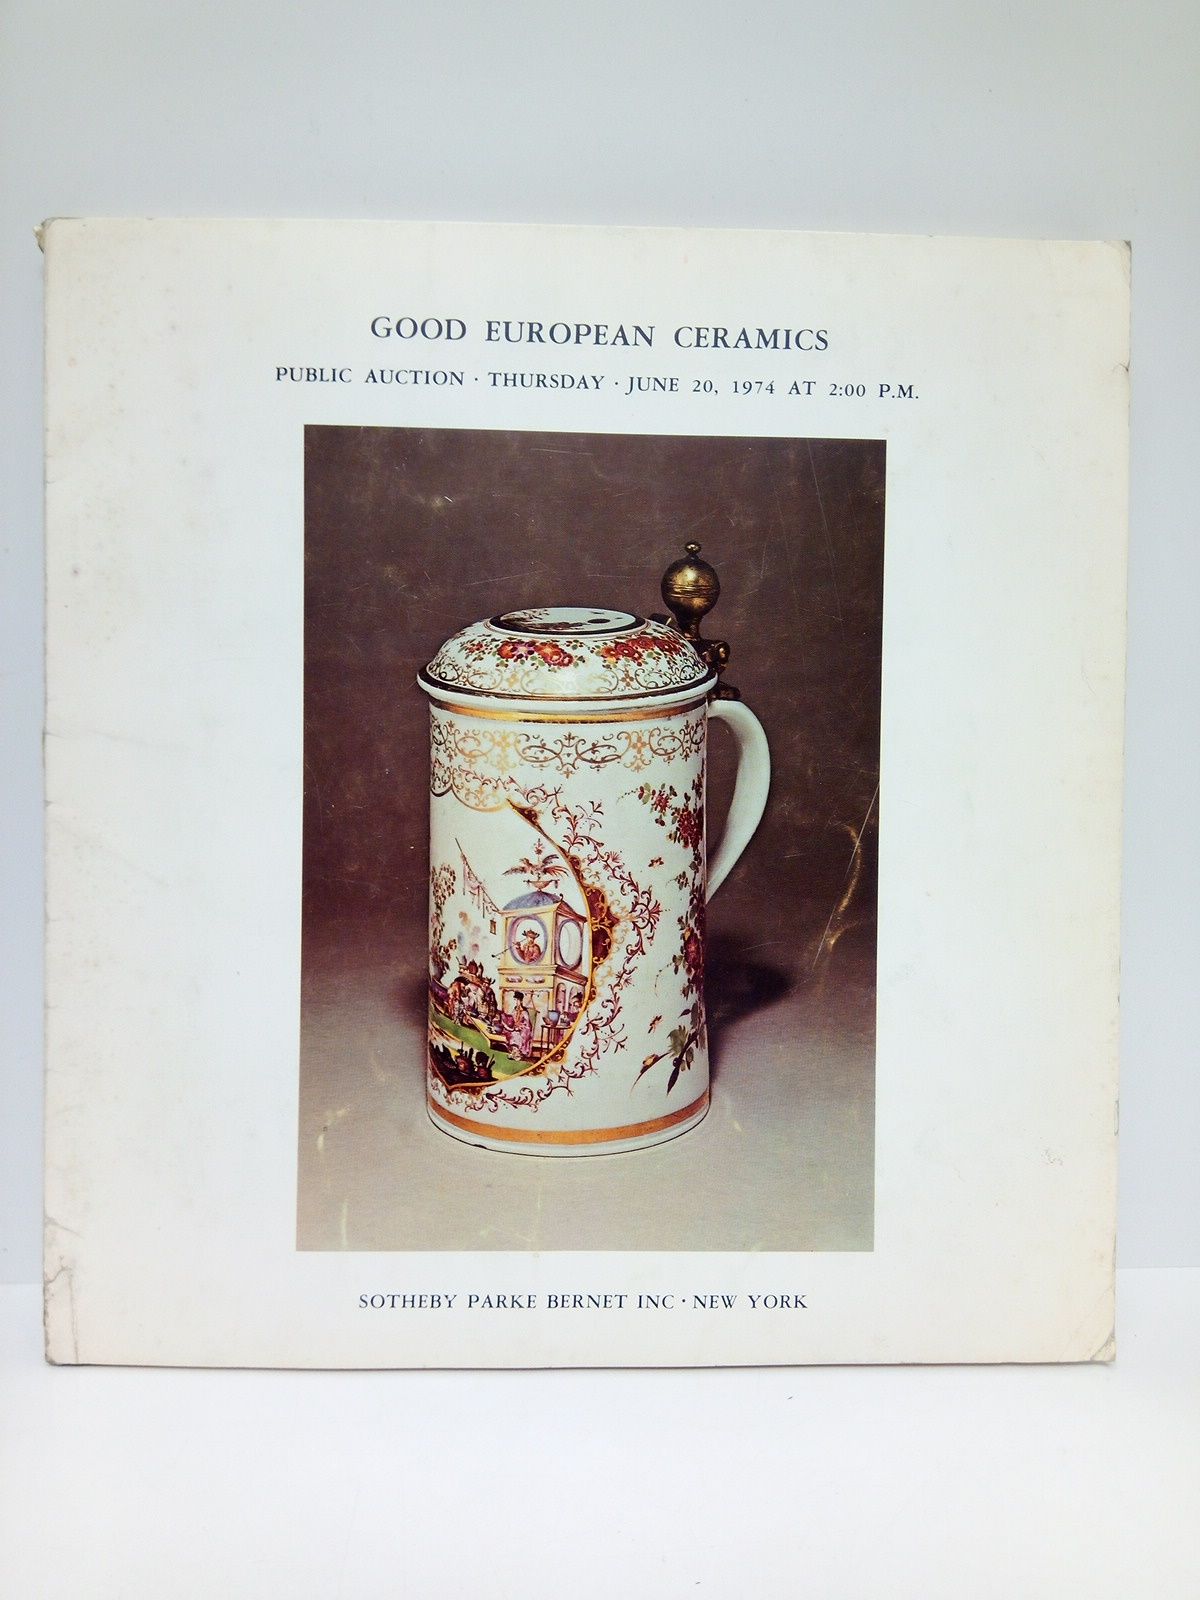 SOTHEBY PARKE BERNET INC  NEW YORK - Good European Ceramics. (Public Auction, thursday,  june 20, 1974 AT 2:00 P.M.)